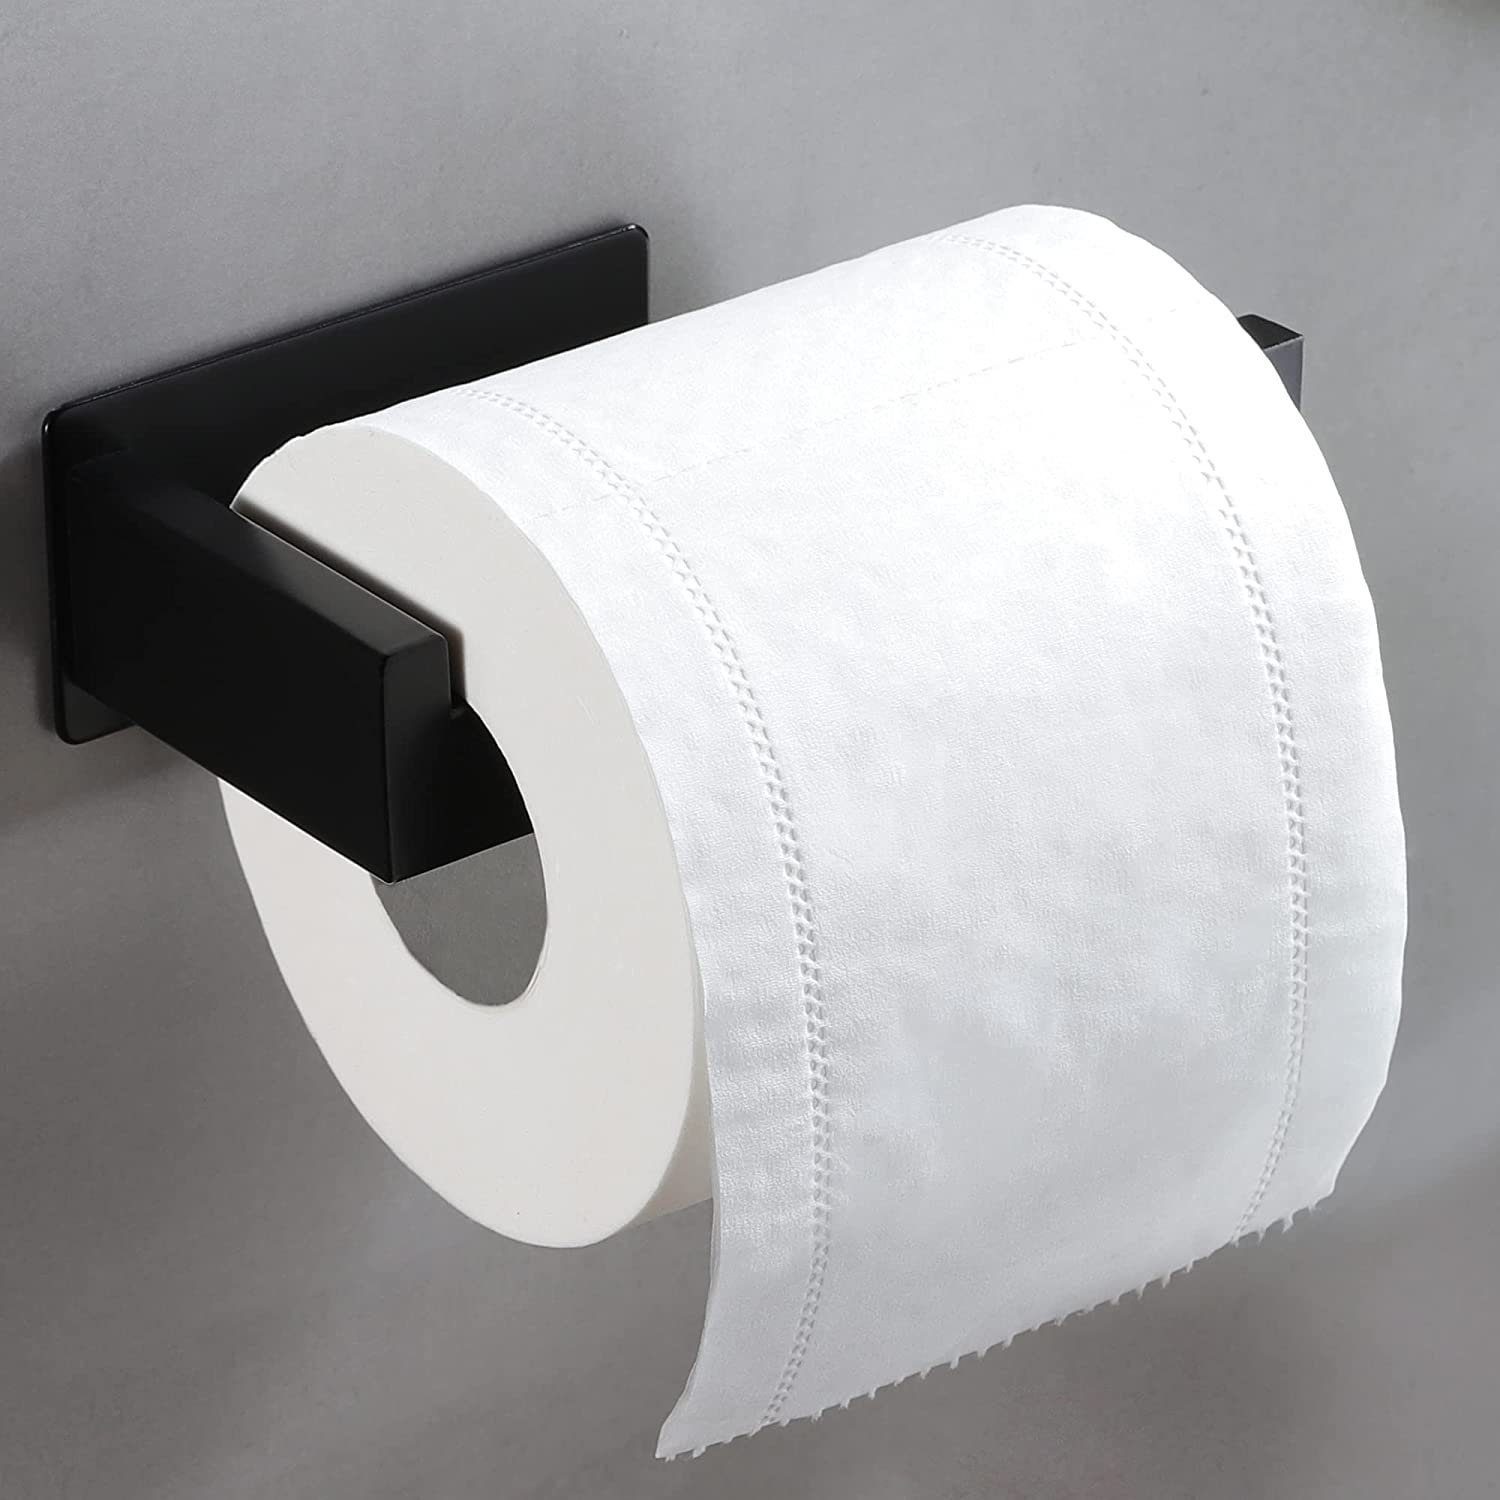 Haiaveng Toilettenpapierhalter Toilettenpapierhalter, kein Bohren erforderlich, Bohren schwarz, Kein